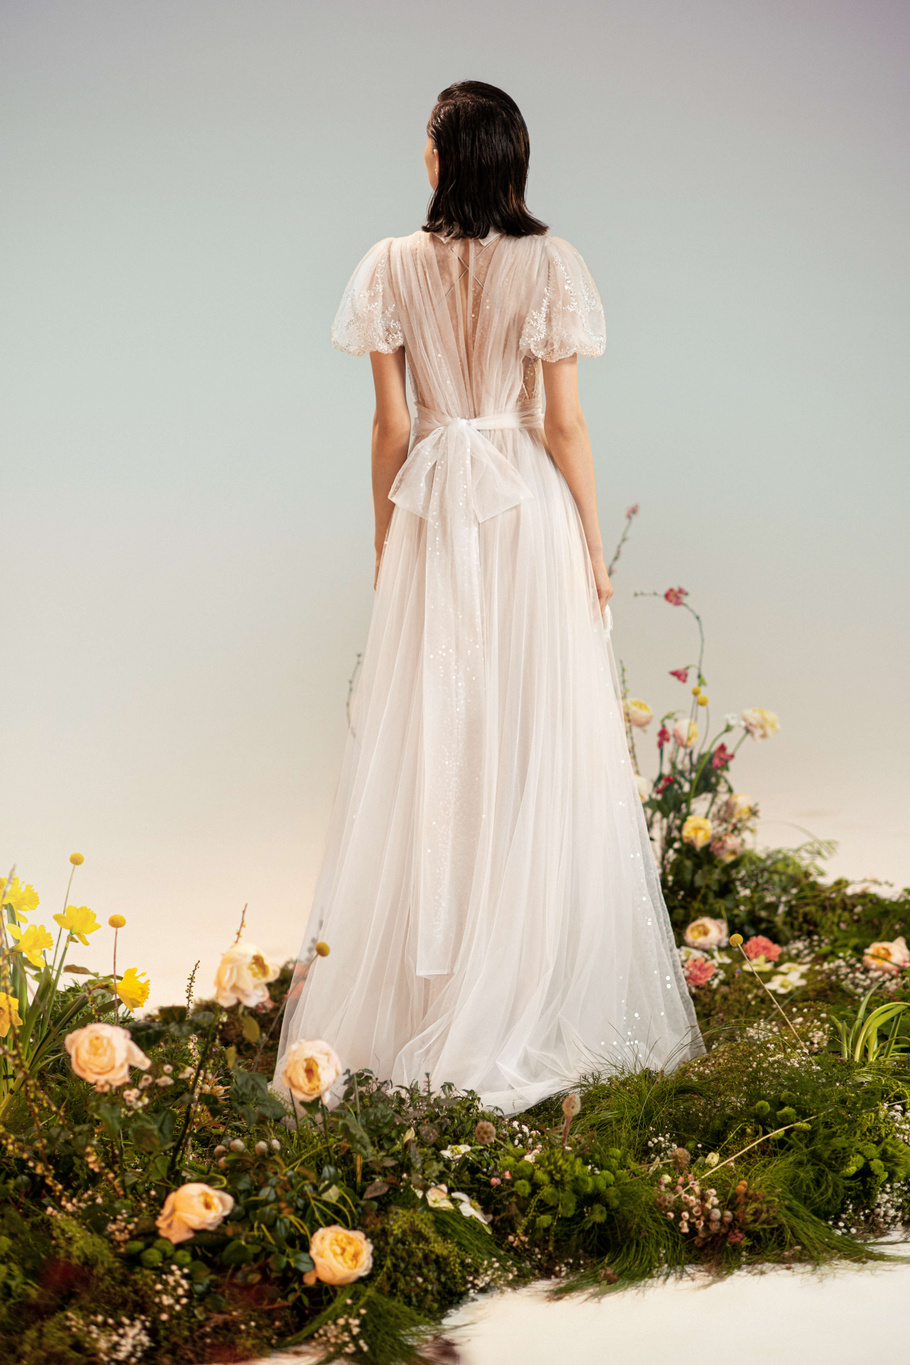 Купить свадебное платье «Вери+Сова» Рара Авис из коллекции Оазис 2022 года в салоне «Мэри Трюфель»